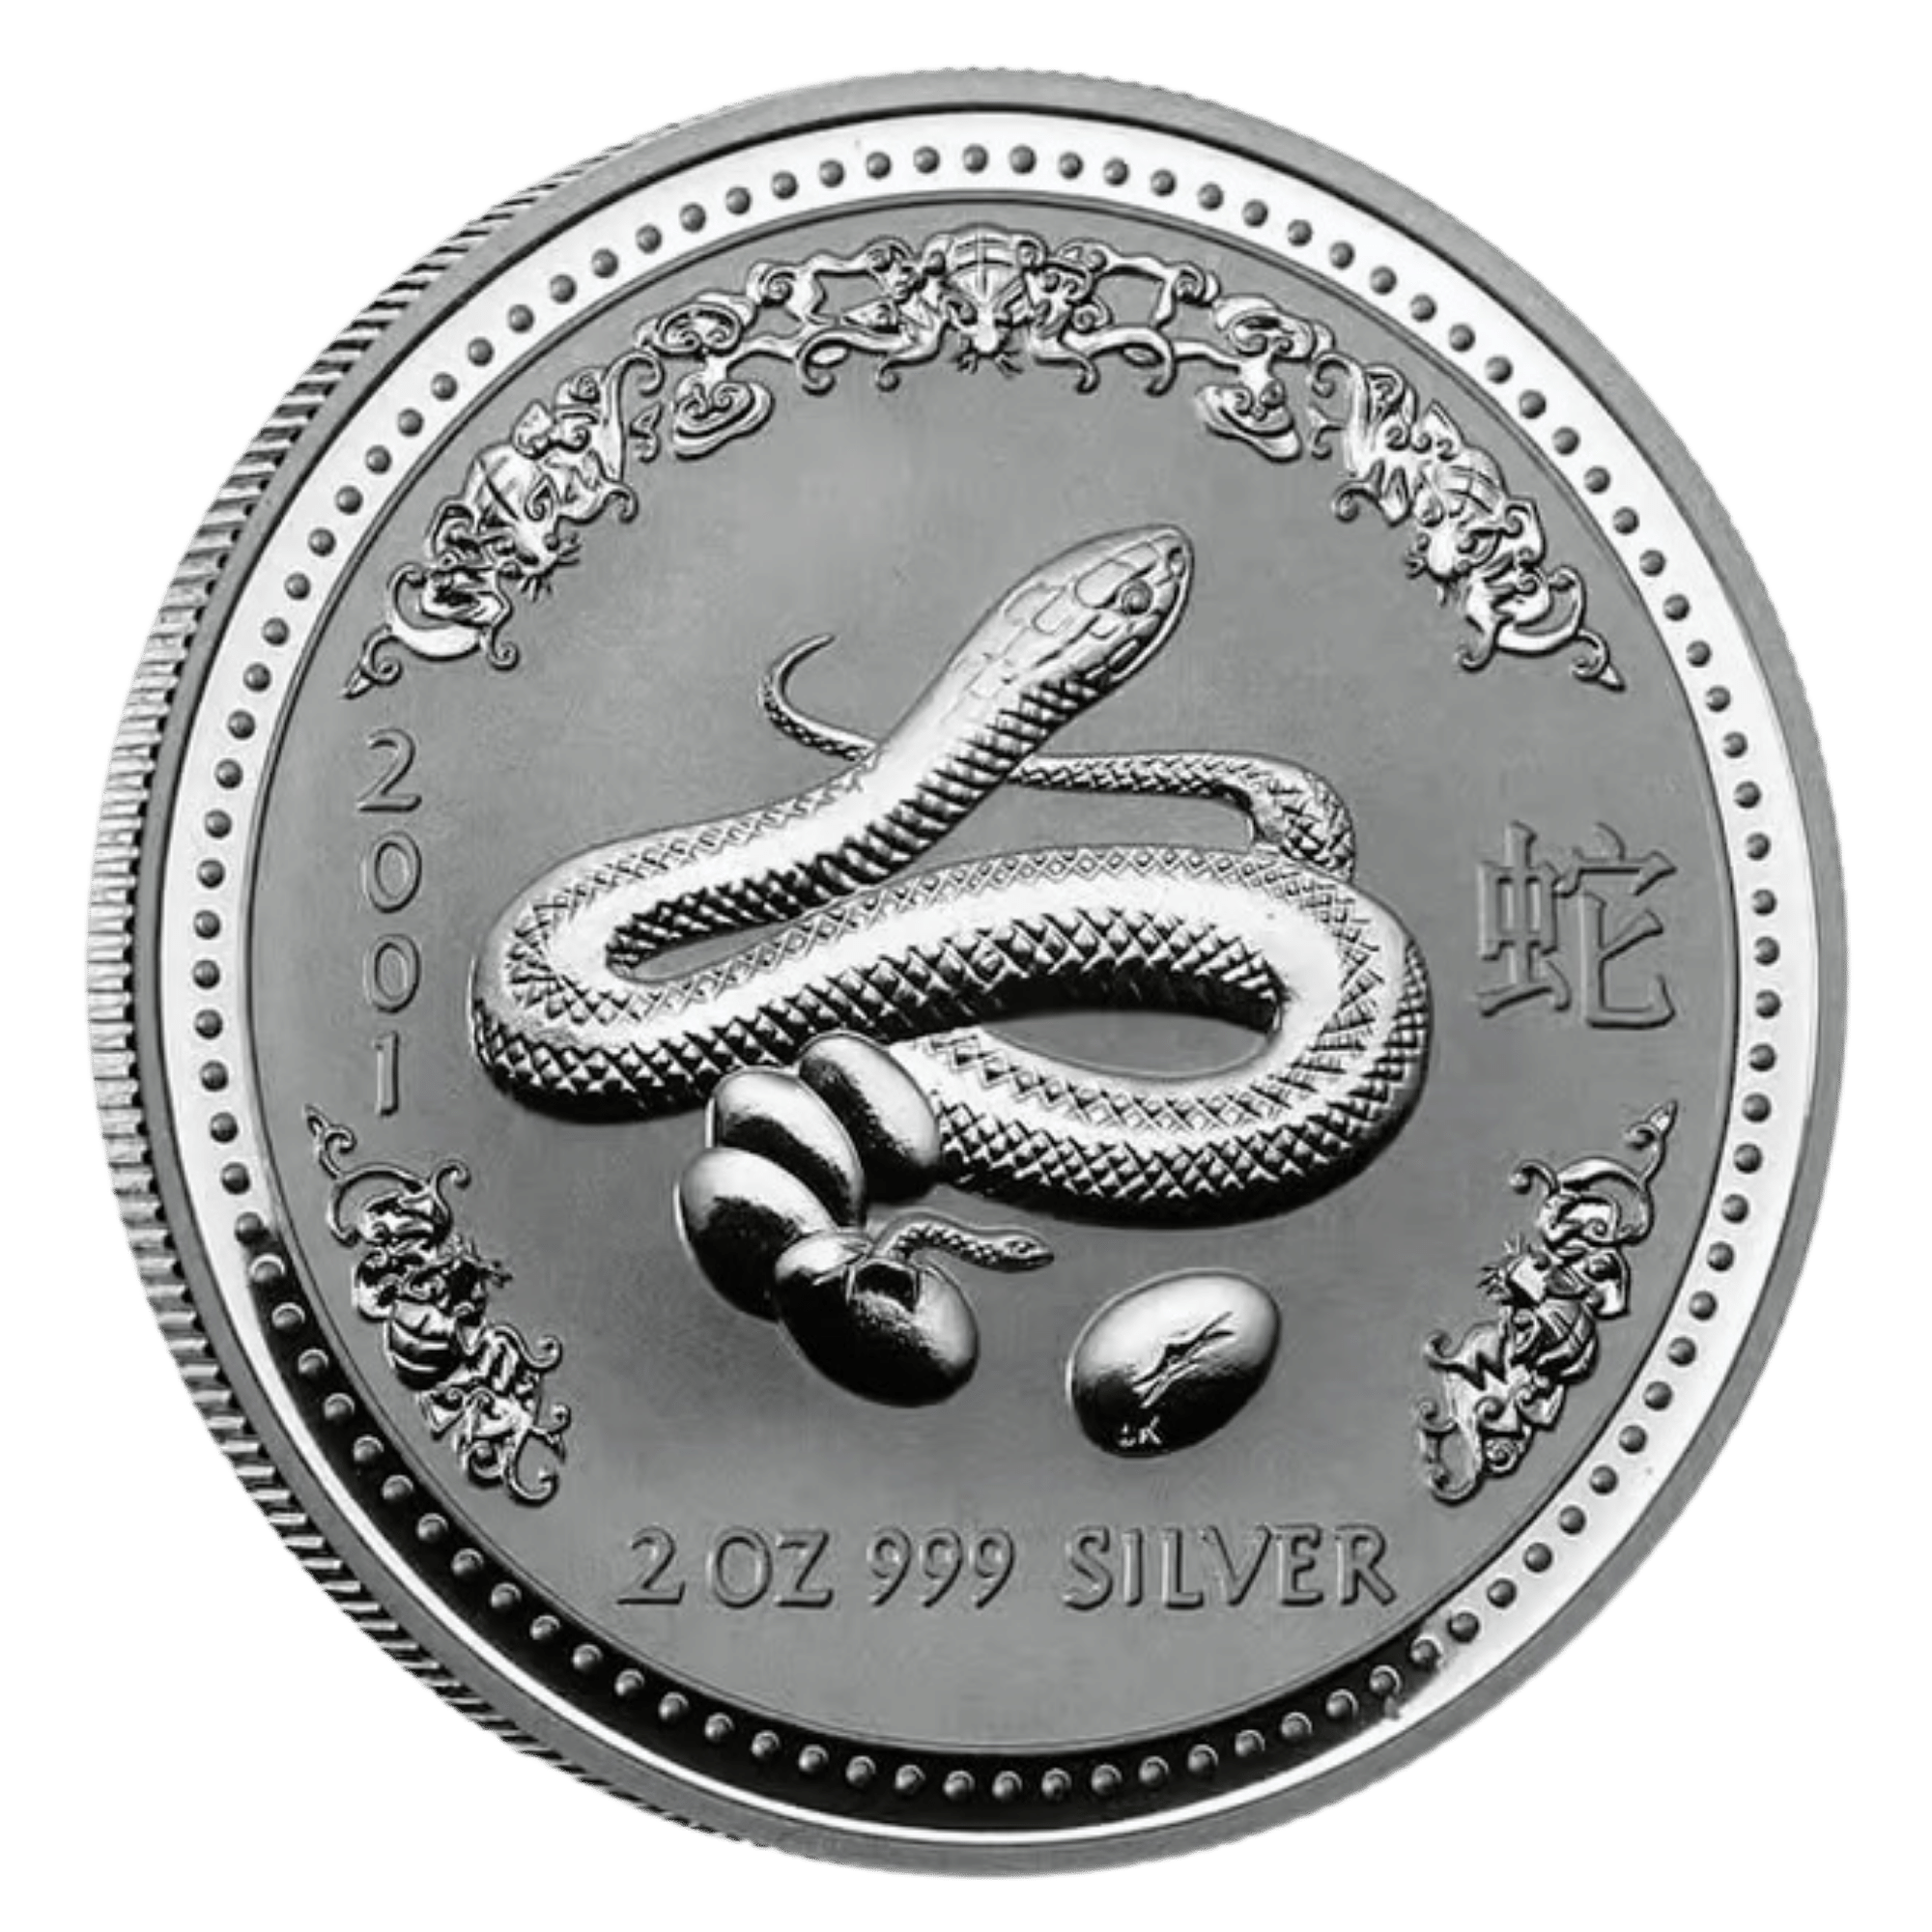 2001 2oz Perth Mint Silver Lunar Snake Coin Series I